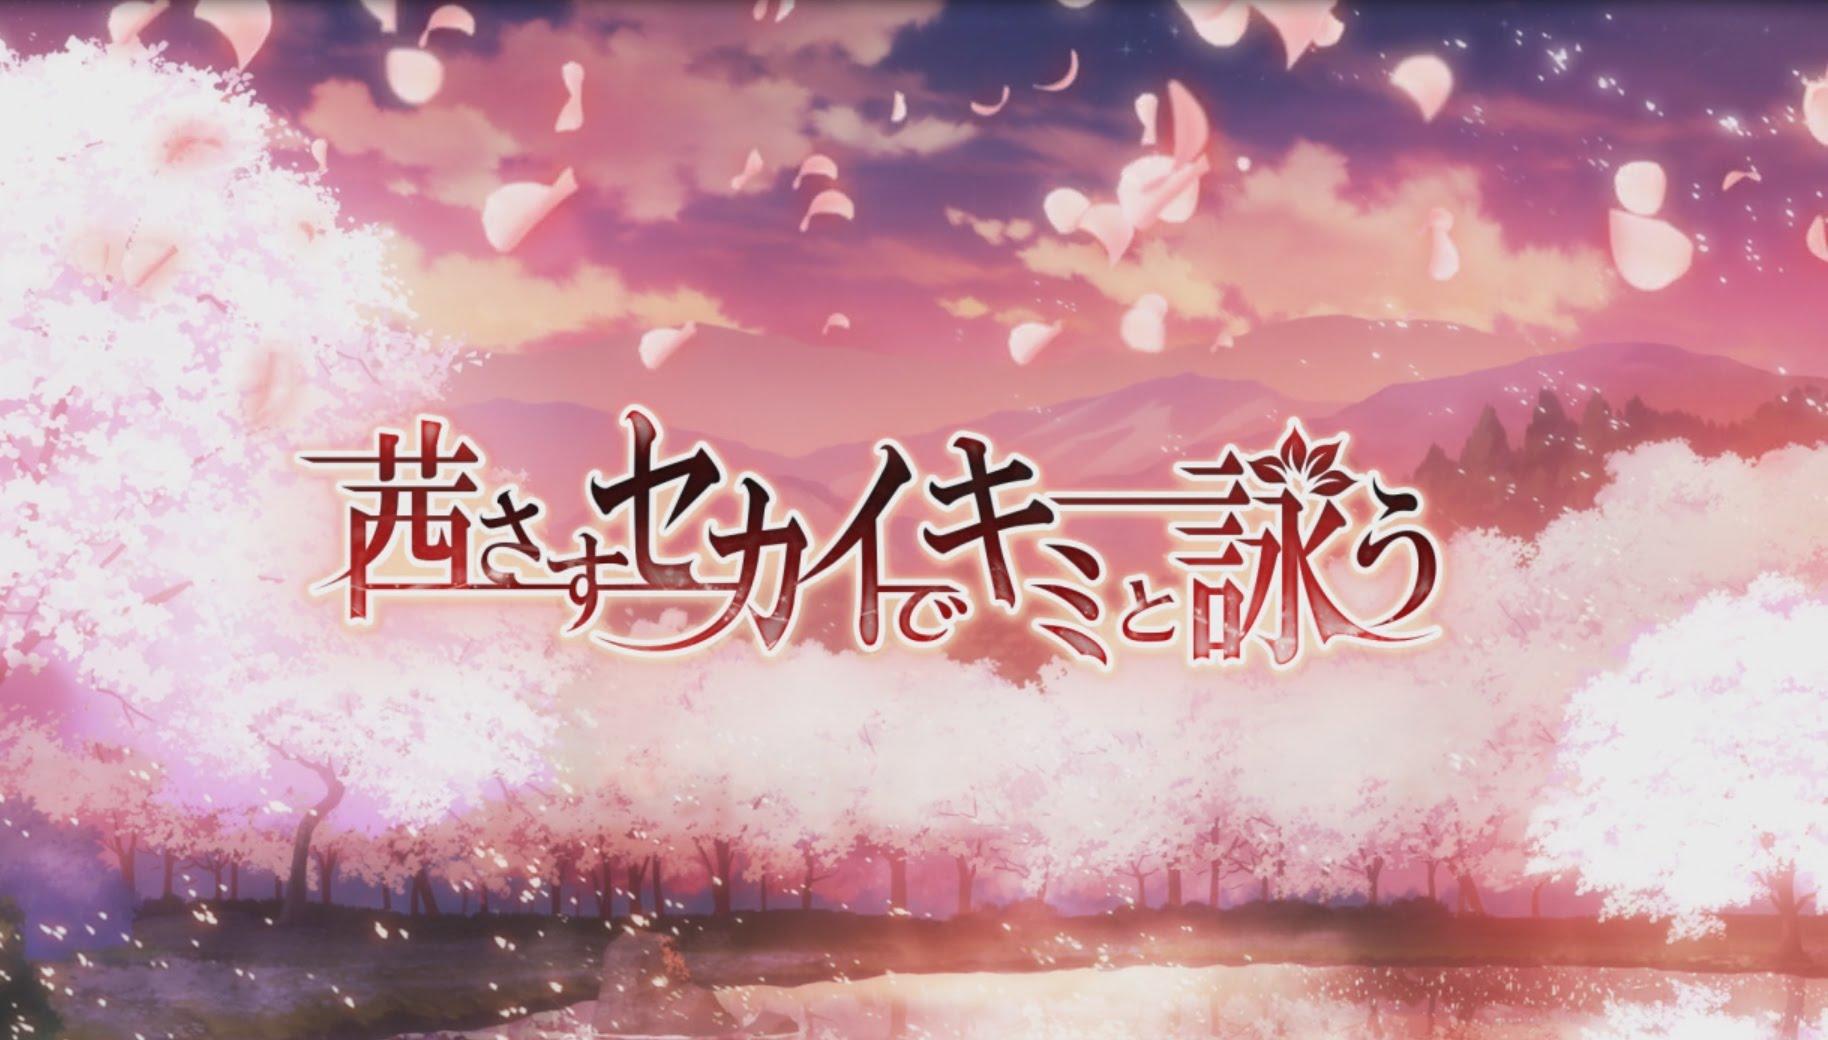 Banner of Chanter avec toi dans le monde Akane sasu 2.40.0